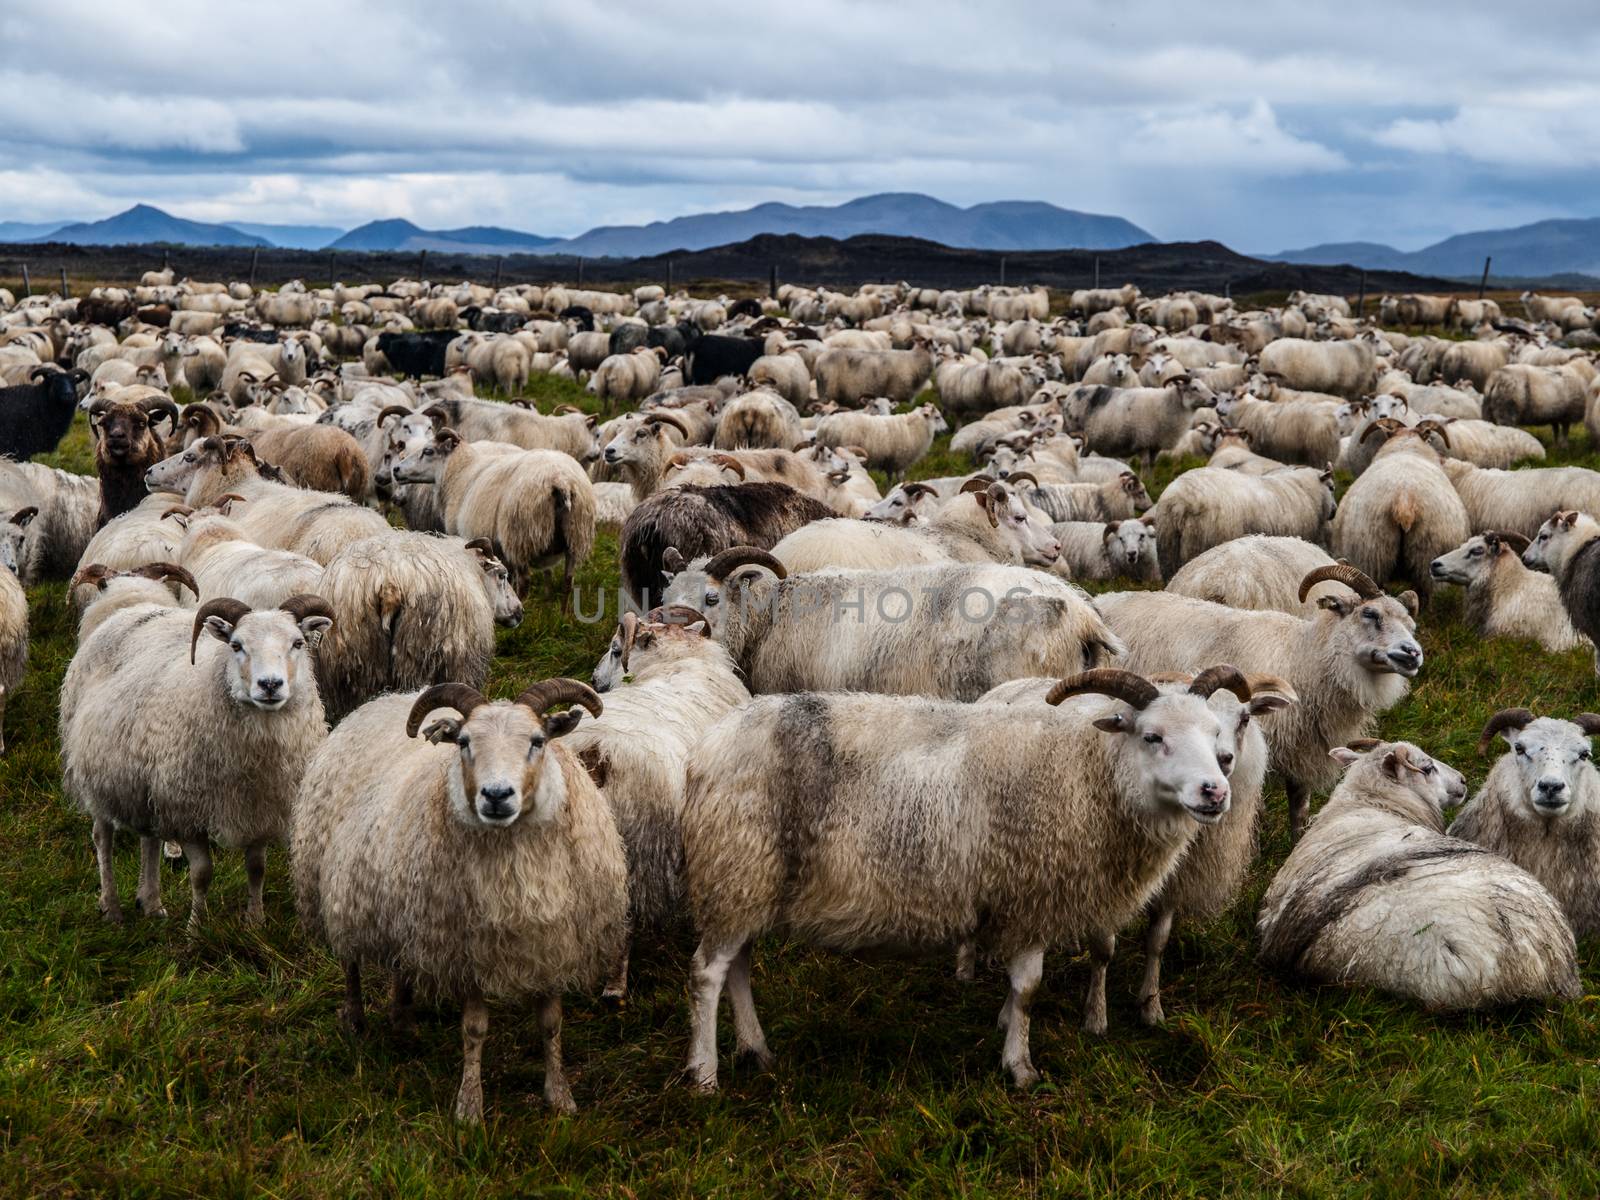 Many sheeps on pasture (Iceland)